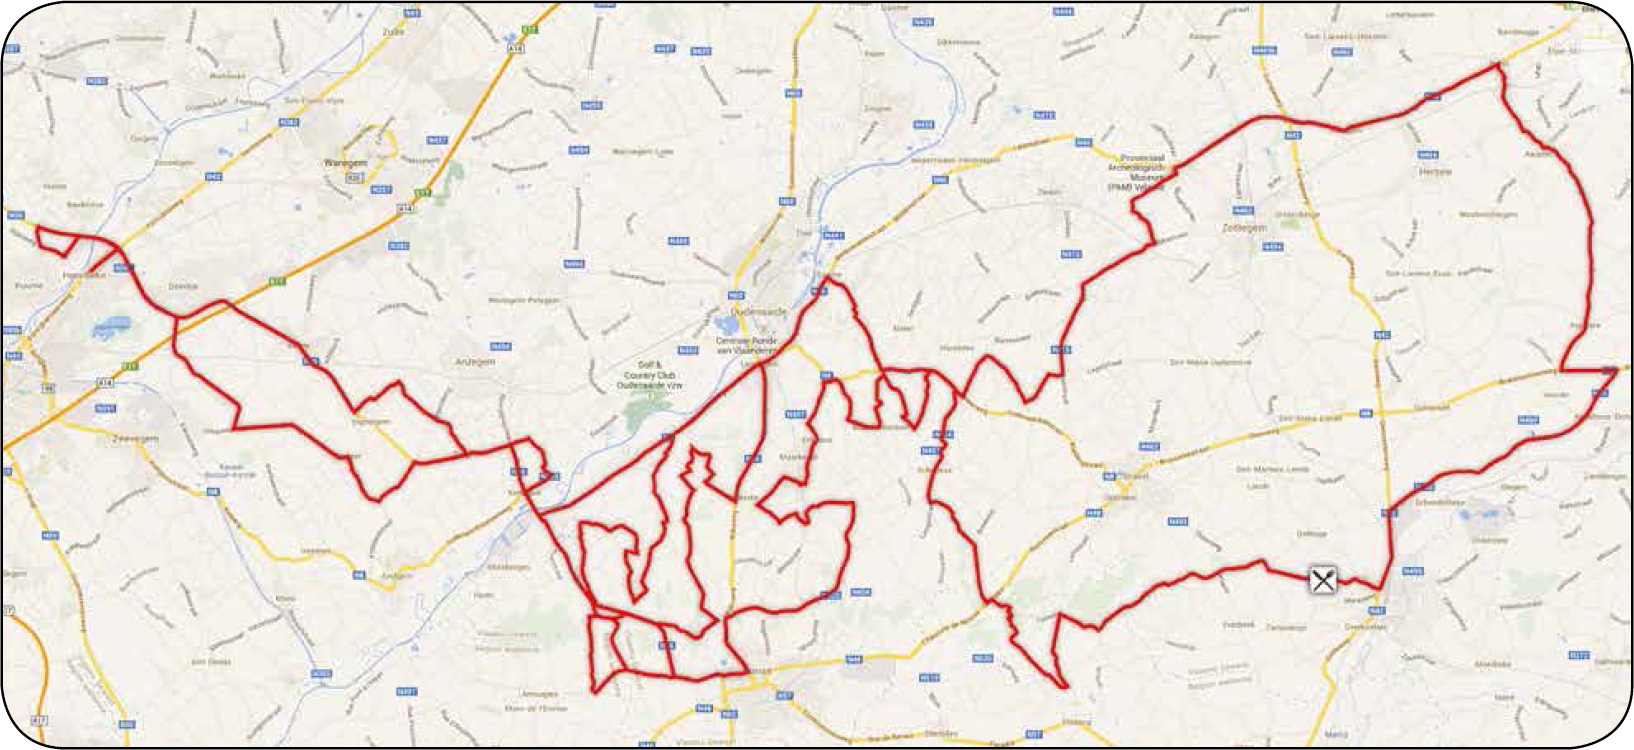 Streckenverlauf E3 Harelbeke 2014